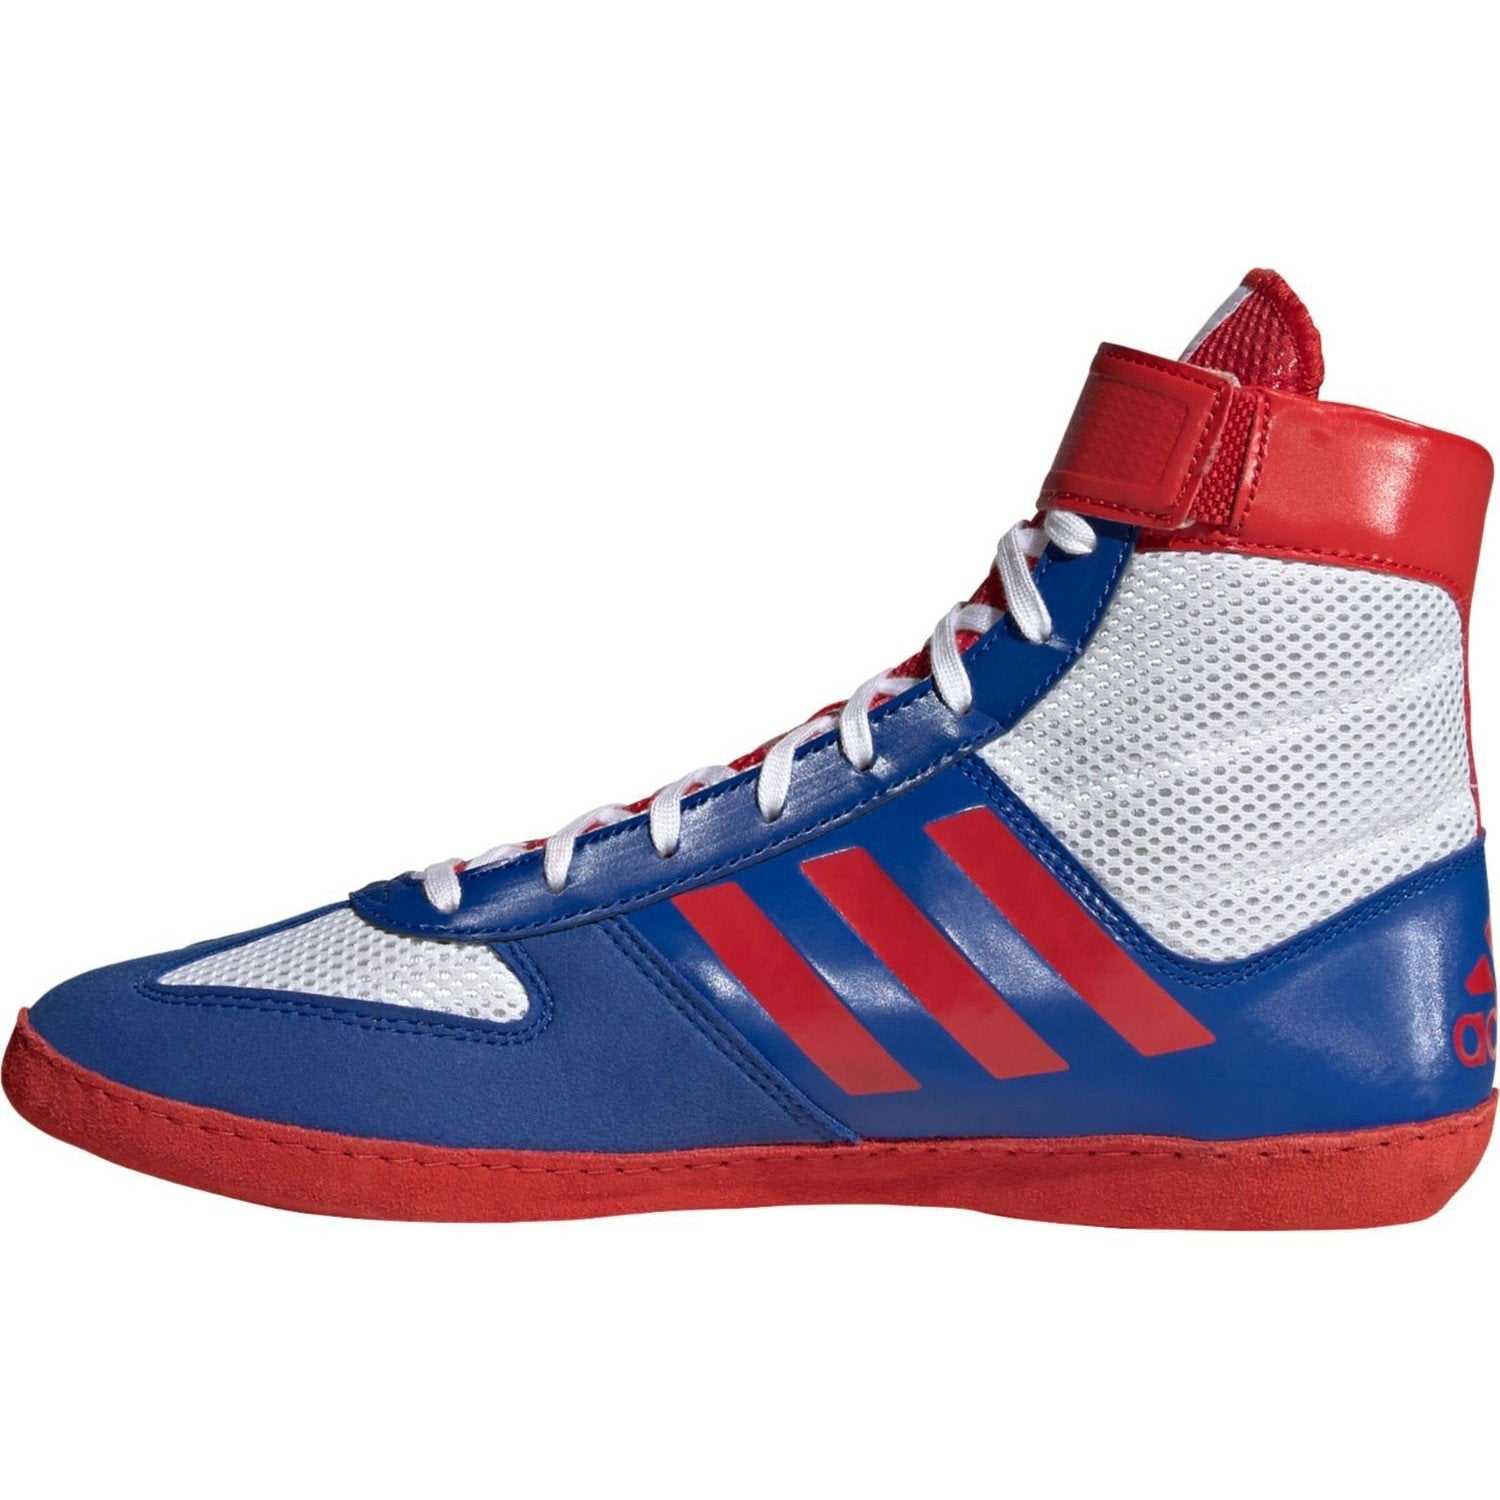 Destrucción gastos generales en términos de Adidas 224 Combat Speed 5 Wrestling Shoes - White Royal Red